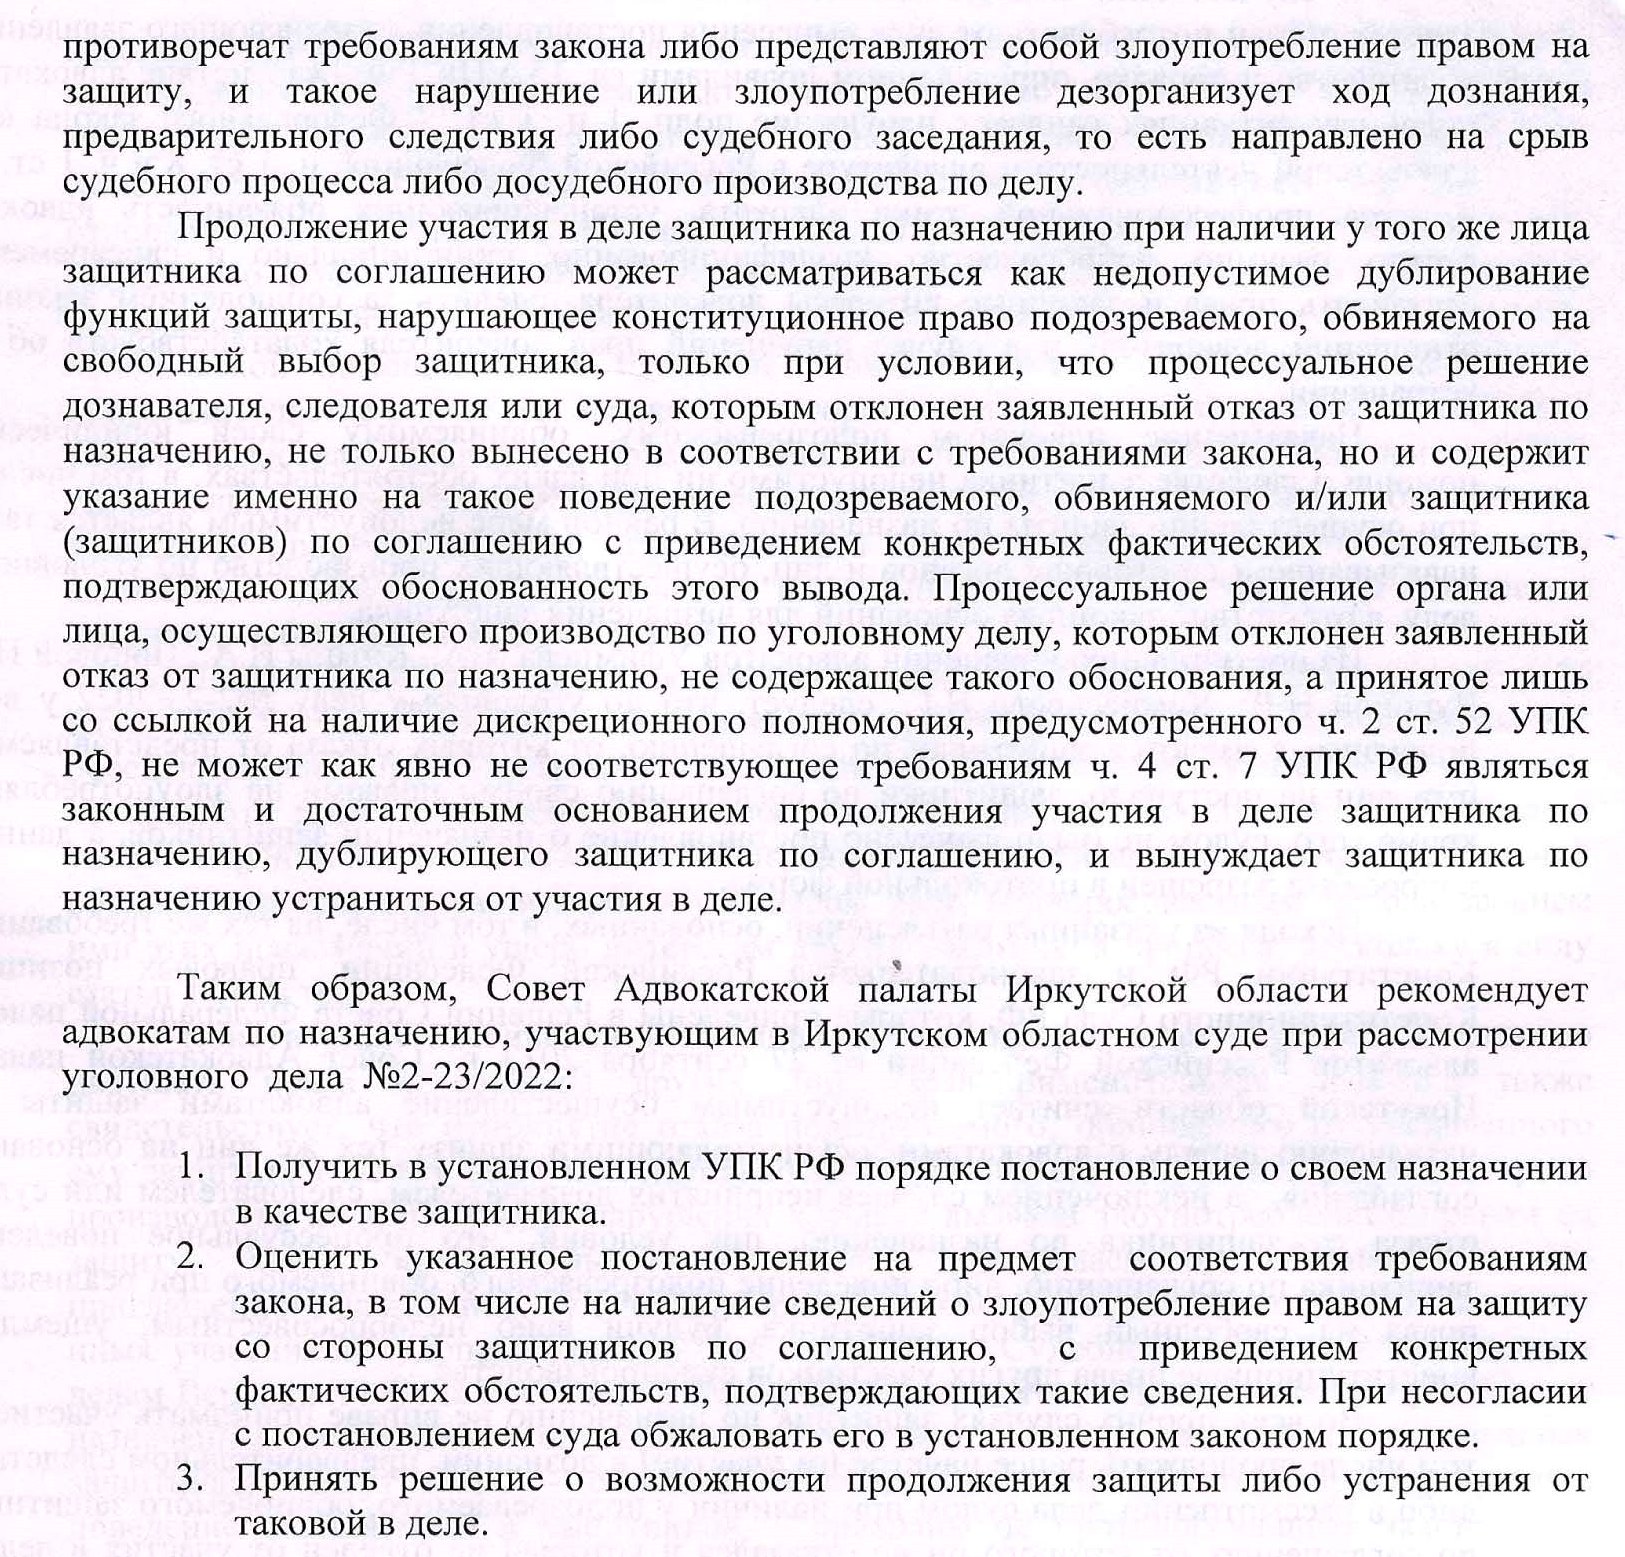 Razyasneniya po povodu vozmozhnyx dejstvij advokatov v slozhnoj eticheskoj situacii kasayushhejsya soblyudeniya eticheskix norm-4.jpg